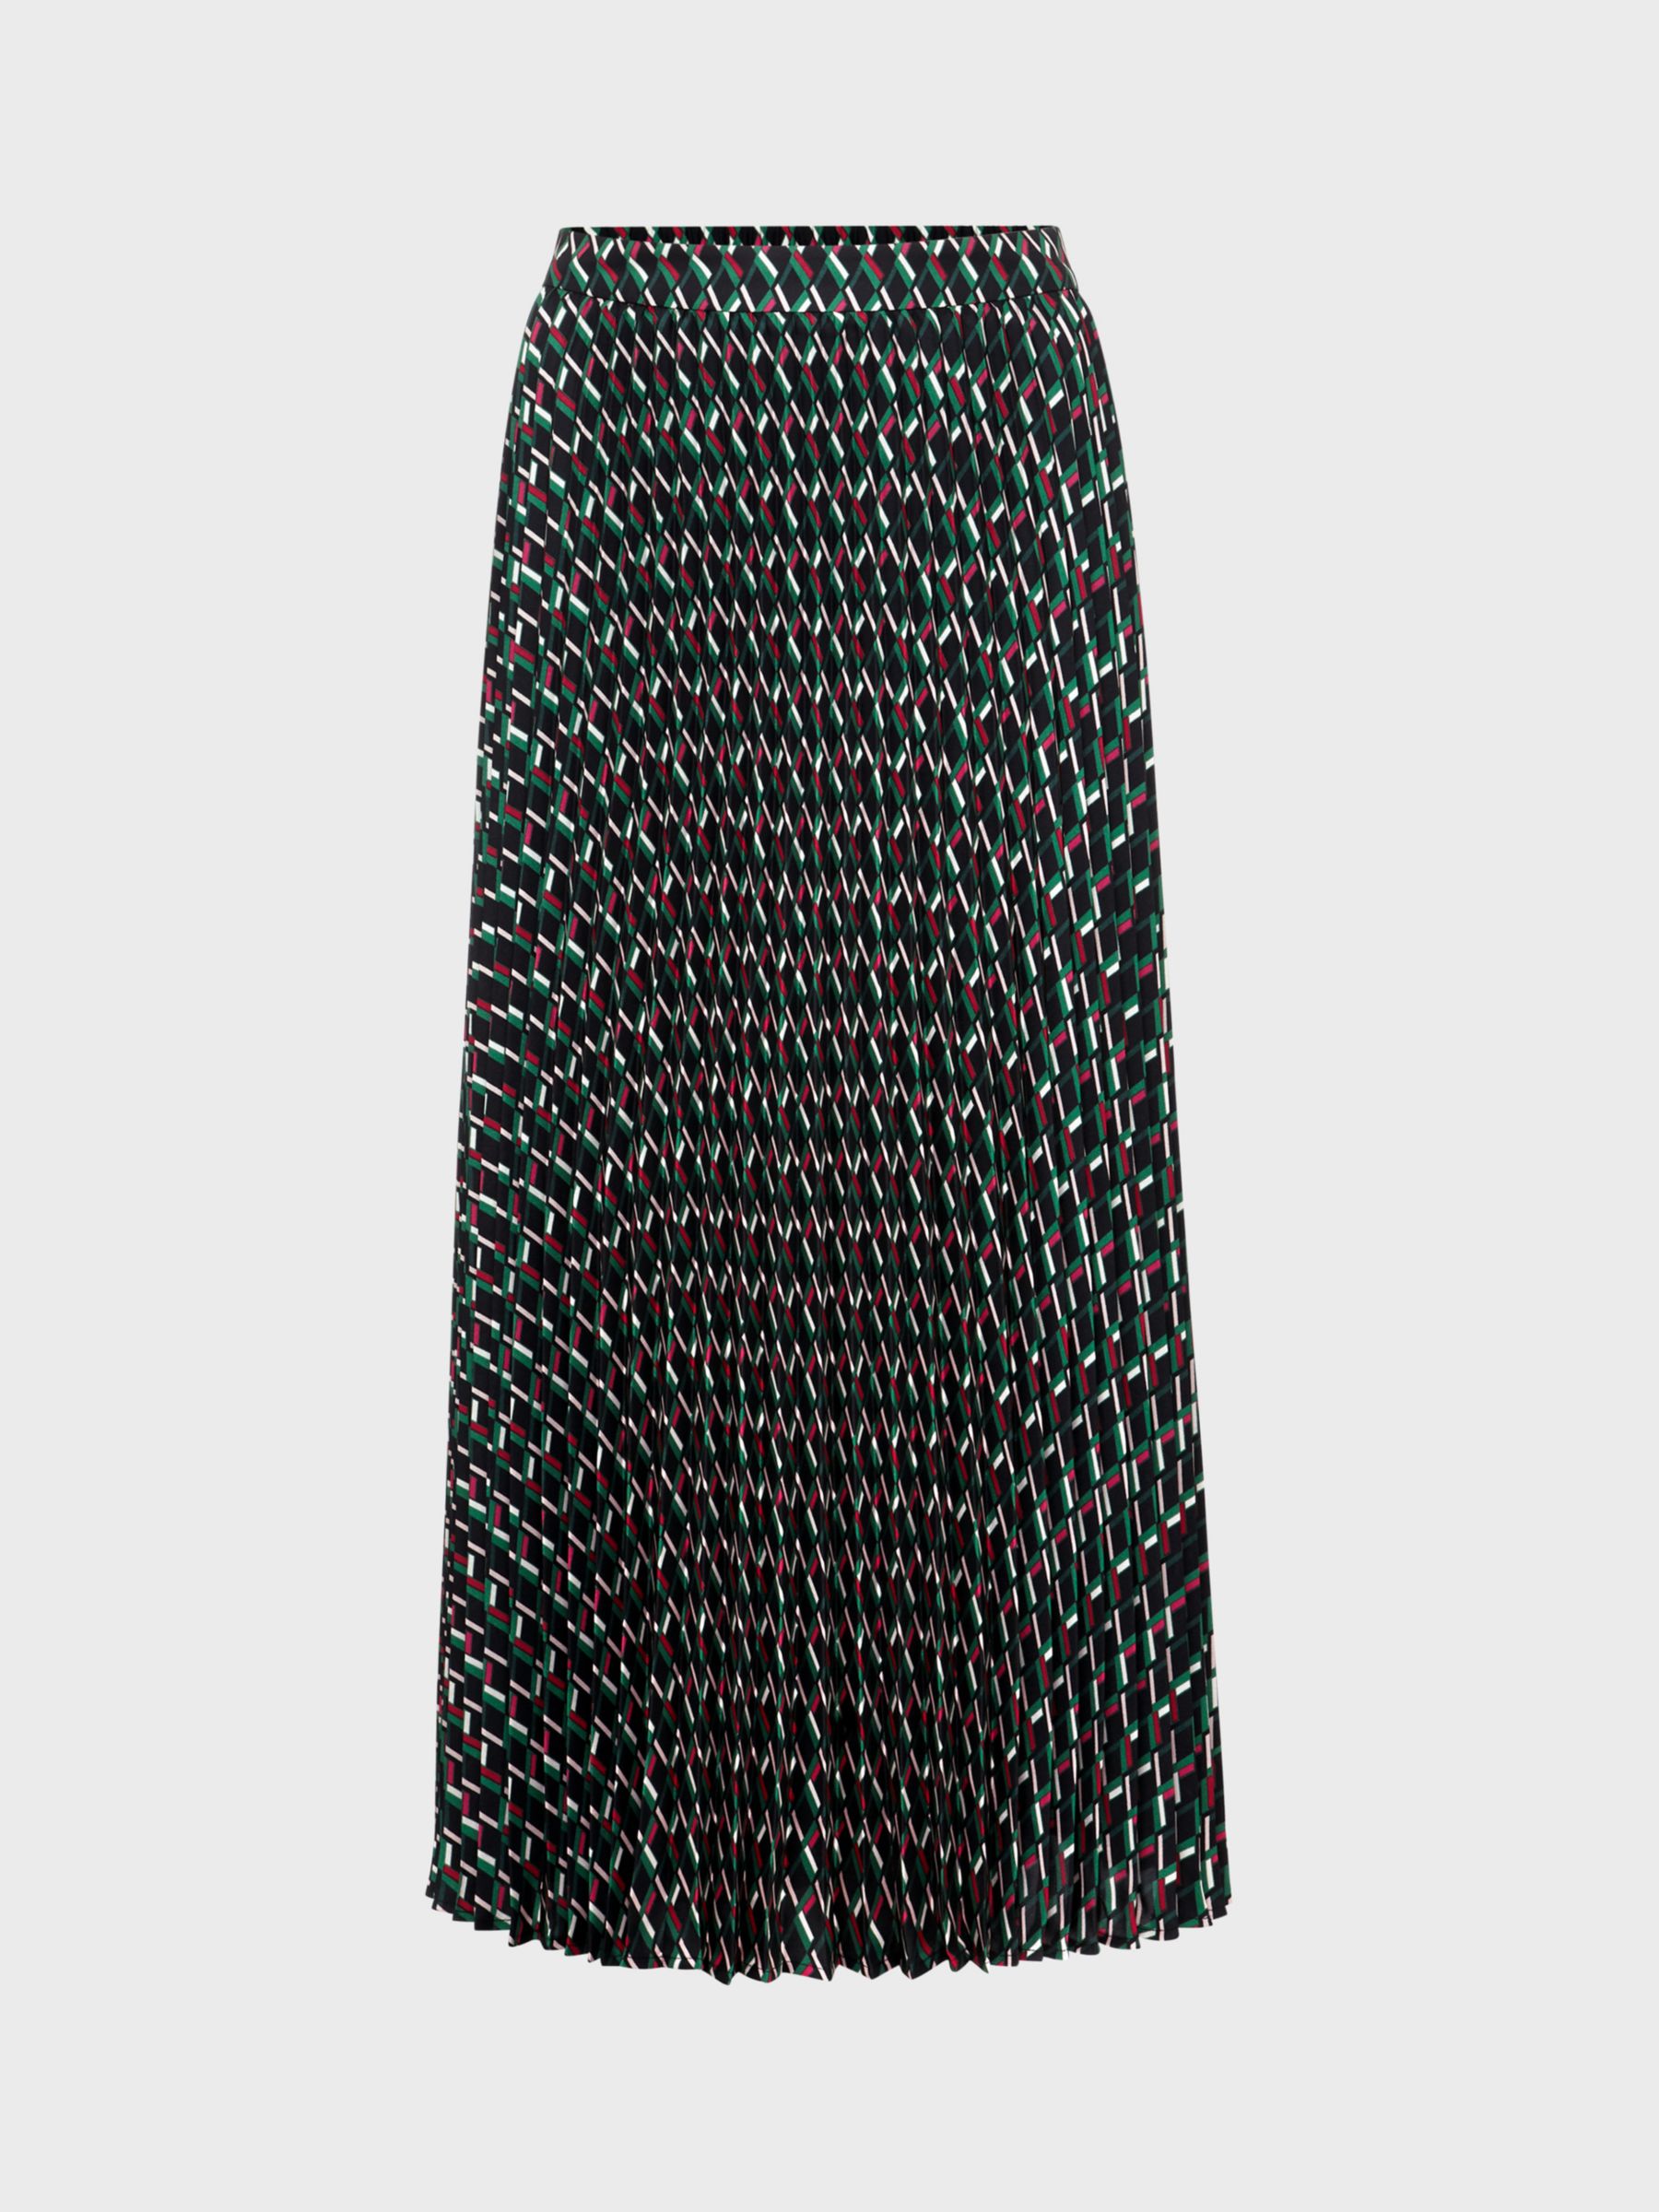 Hobbs Kayla Pleated Midi Skirt, Multi at John Lewis & Partners